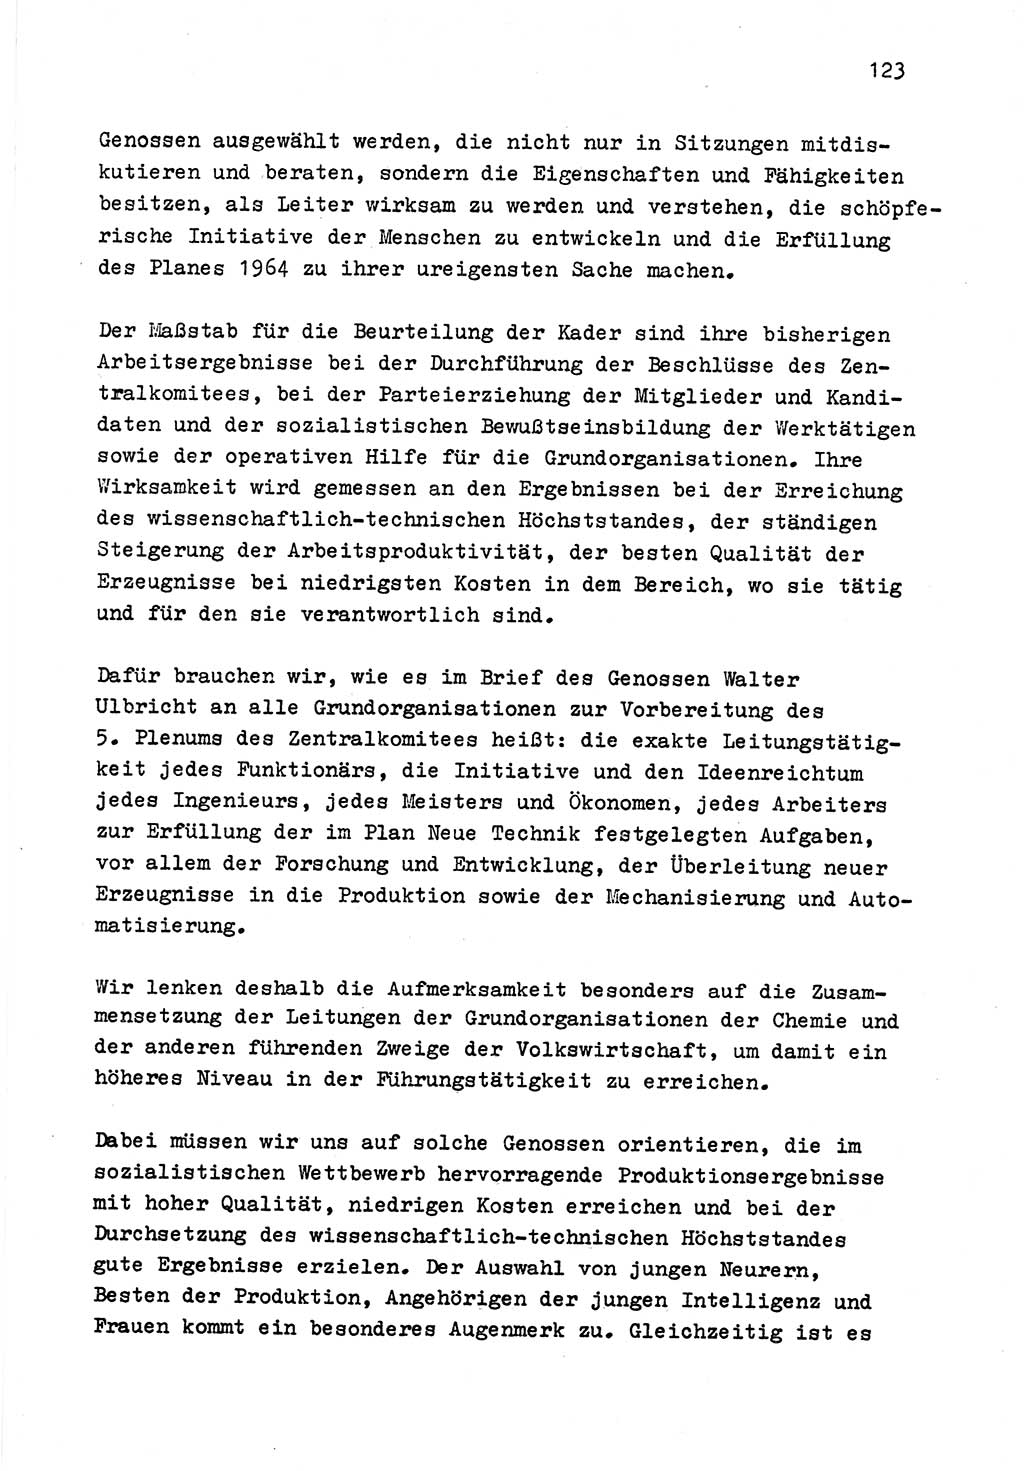 Zu Fragen der Parteiarbeit [Sozialistische Einheitspartei Deutschlands (SED) Deutsche Demokratische Republik (DDR)] 1979, Seite 123 (Fr. PA SED DDR 1979, S. 123)